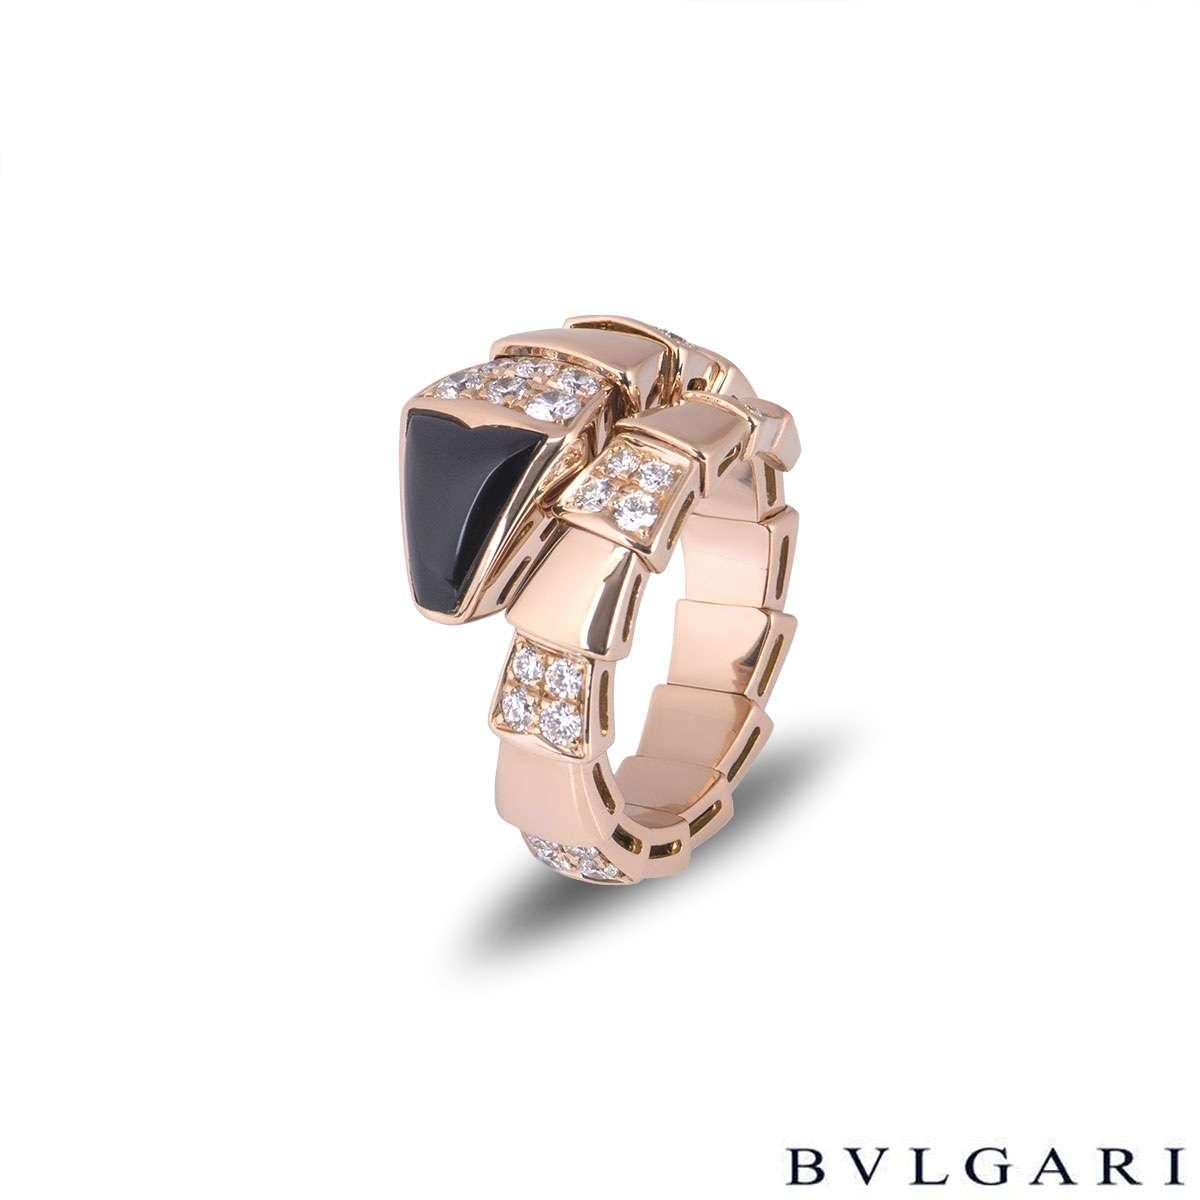 Bvlgari, en or rose 18 carats, bague en onyx et diamants de la collection Serpenti. La bague a la forme d'un serpent s'enroulant autour du doigt avec une tête en onyx et présentant une alternance d'intersections flexibles hautement polies et de